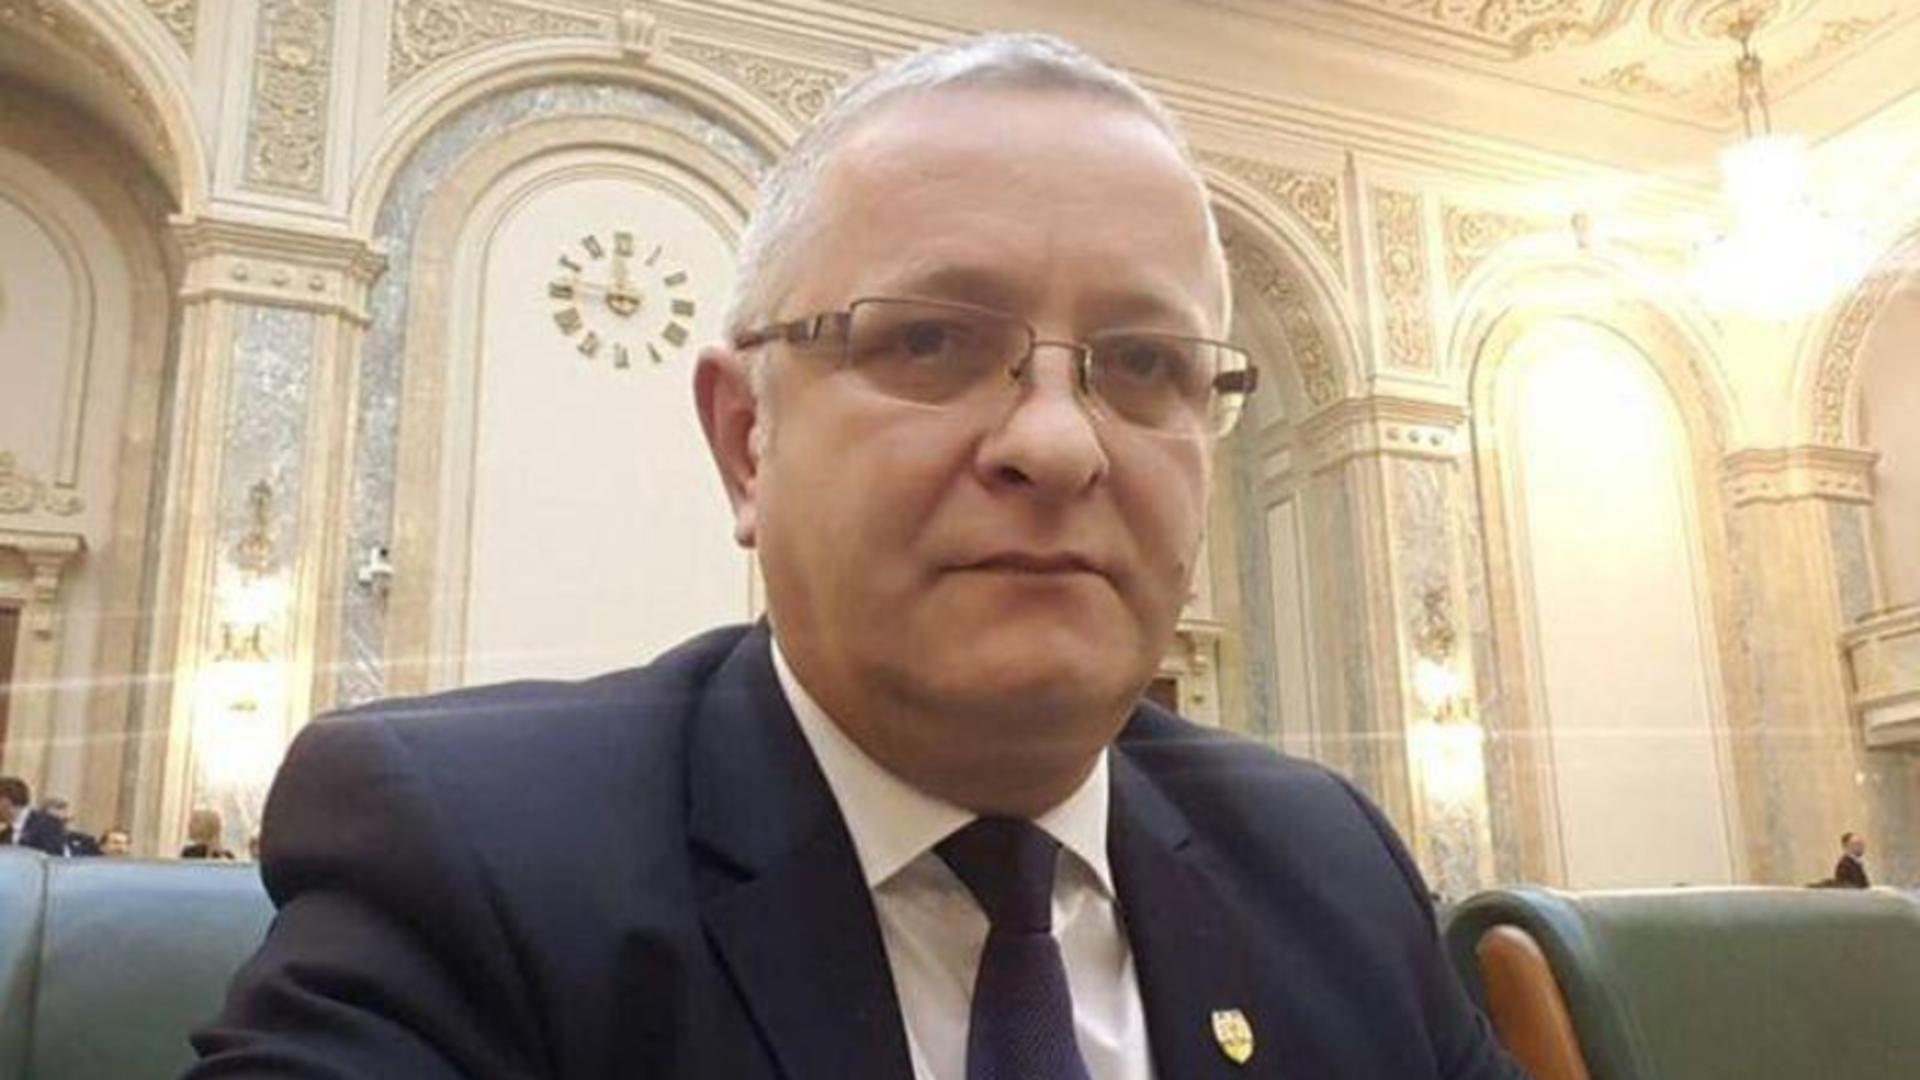  Ioan Chirteș, șeful Comisiei de Control din Parlament